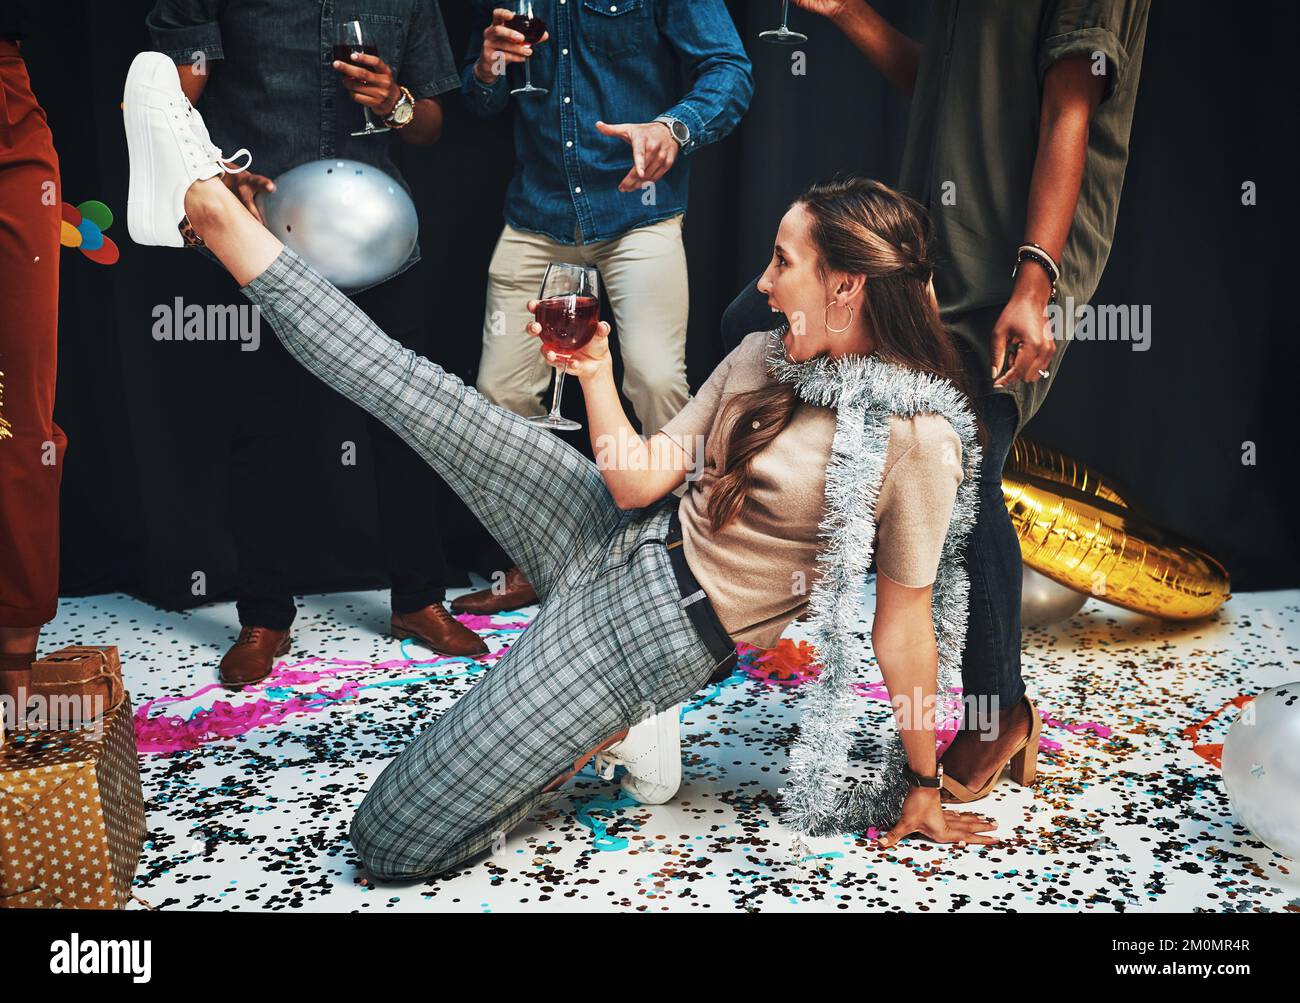 Frau, Tanz und Wein zum Feiern mit Freunden auf dem Boden, mit Konfetti, Alkohol und Tanzbewegungen für Neujahr, Geburtstag oder Weihnachten. Betrunken Stockfoto